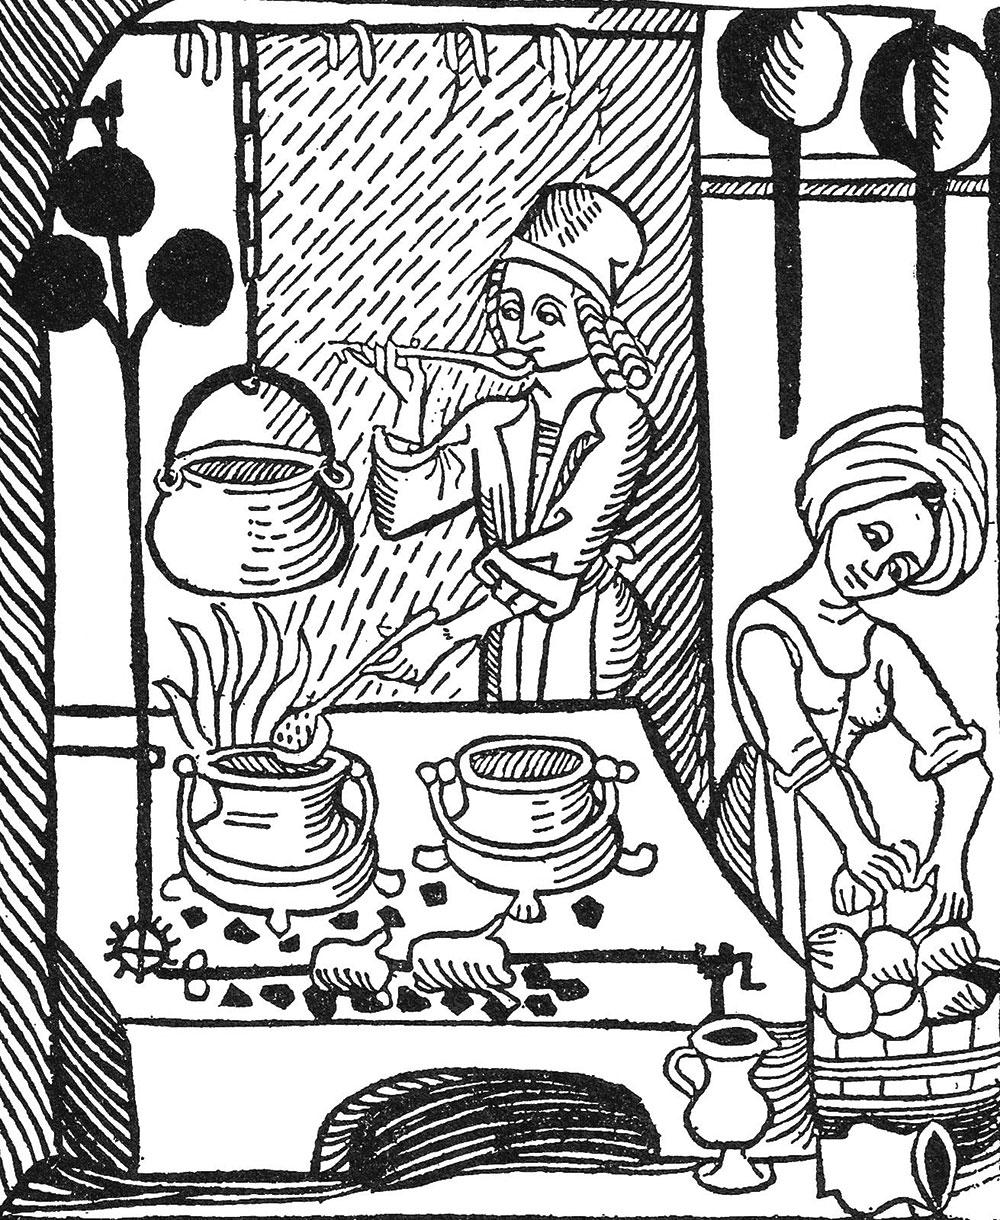 Epidemier kunne rase og præsten præke om den evige pine, der ventede. Men med renæssancen kom en modreaktion og en lyst til at fejre livet – i mode, kunst og digtning og ved bordets glæder. Sanseligheden lyser ud af billedet af kokken og kokkepigen ved arbejdet. Træsnit fra den første bogtrykte, tyske kogebog fra 1485.